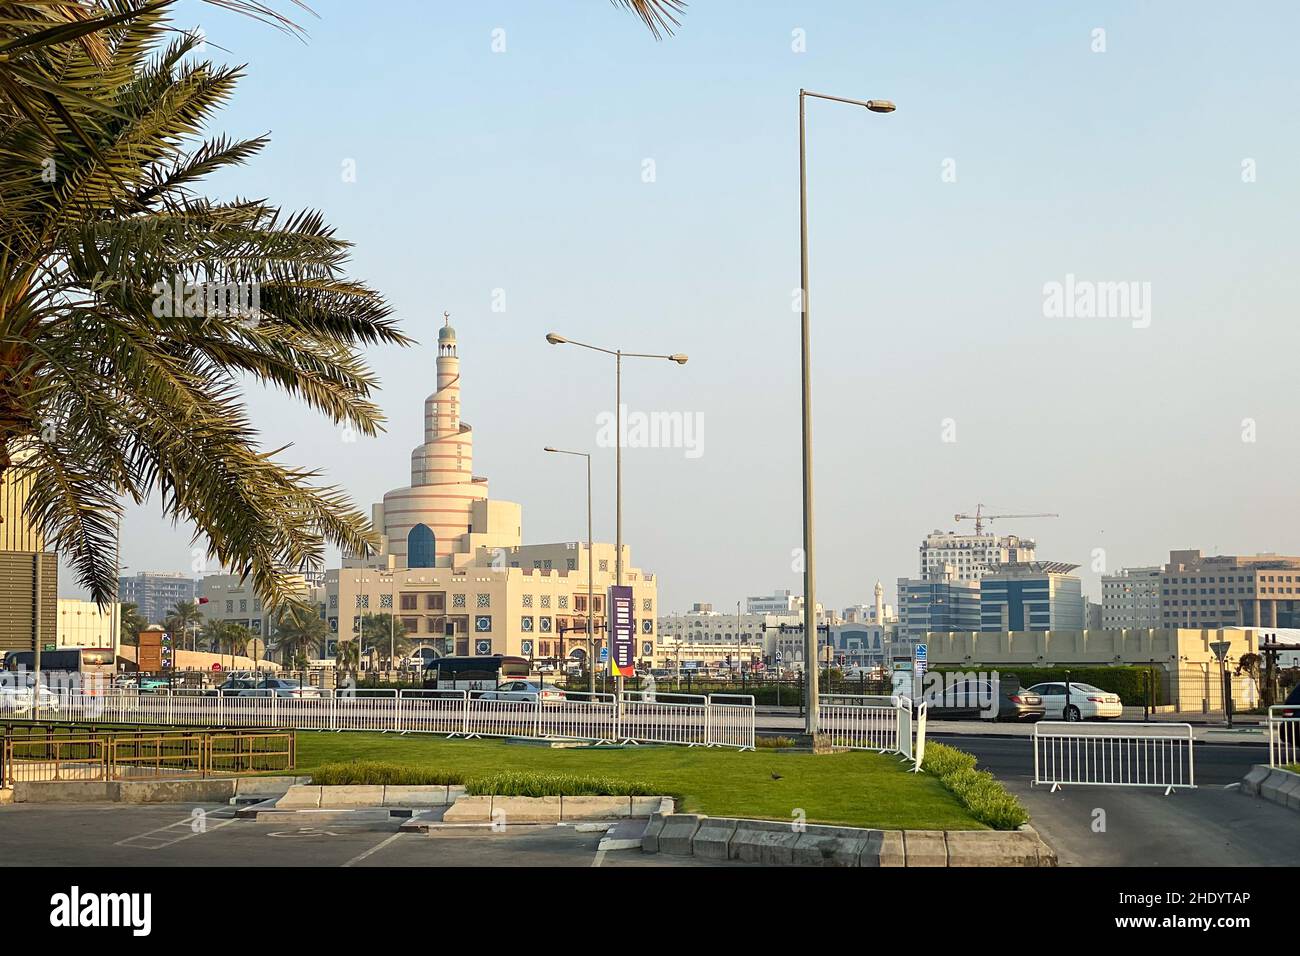 Ville historique de Doha, Qatar avec bâtiment Al Fanal et Centre culturel islamique du Qatar contre ciel bleu Banque D'Images